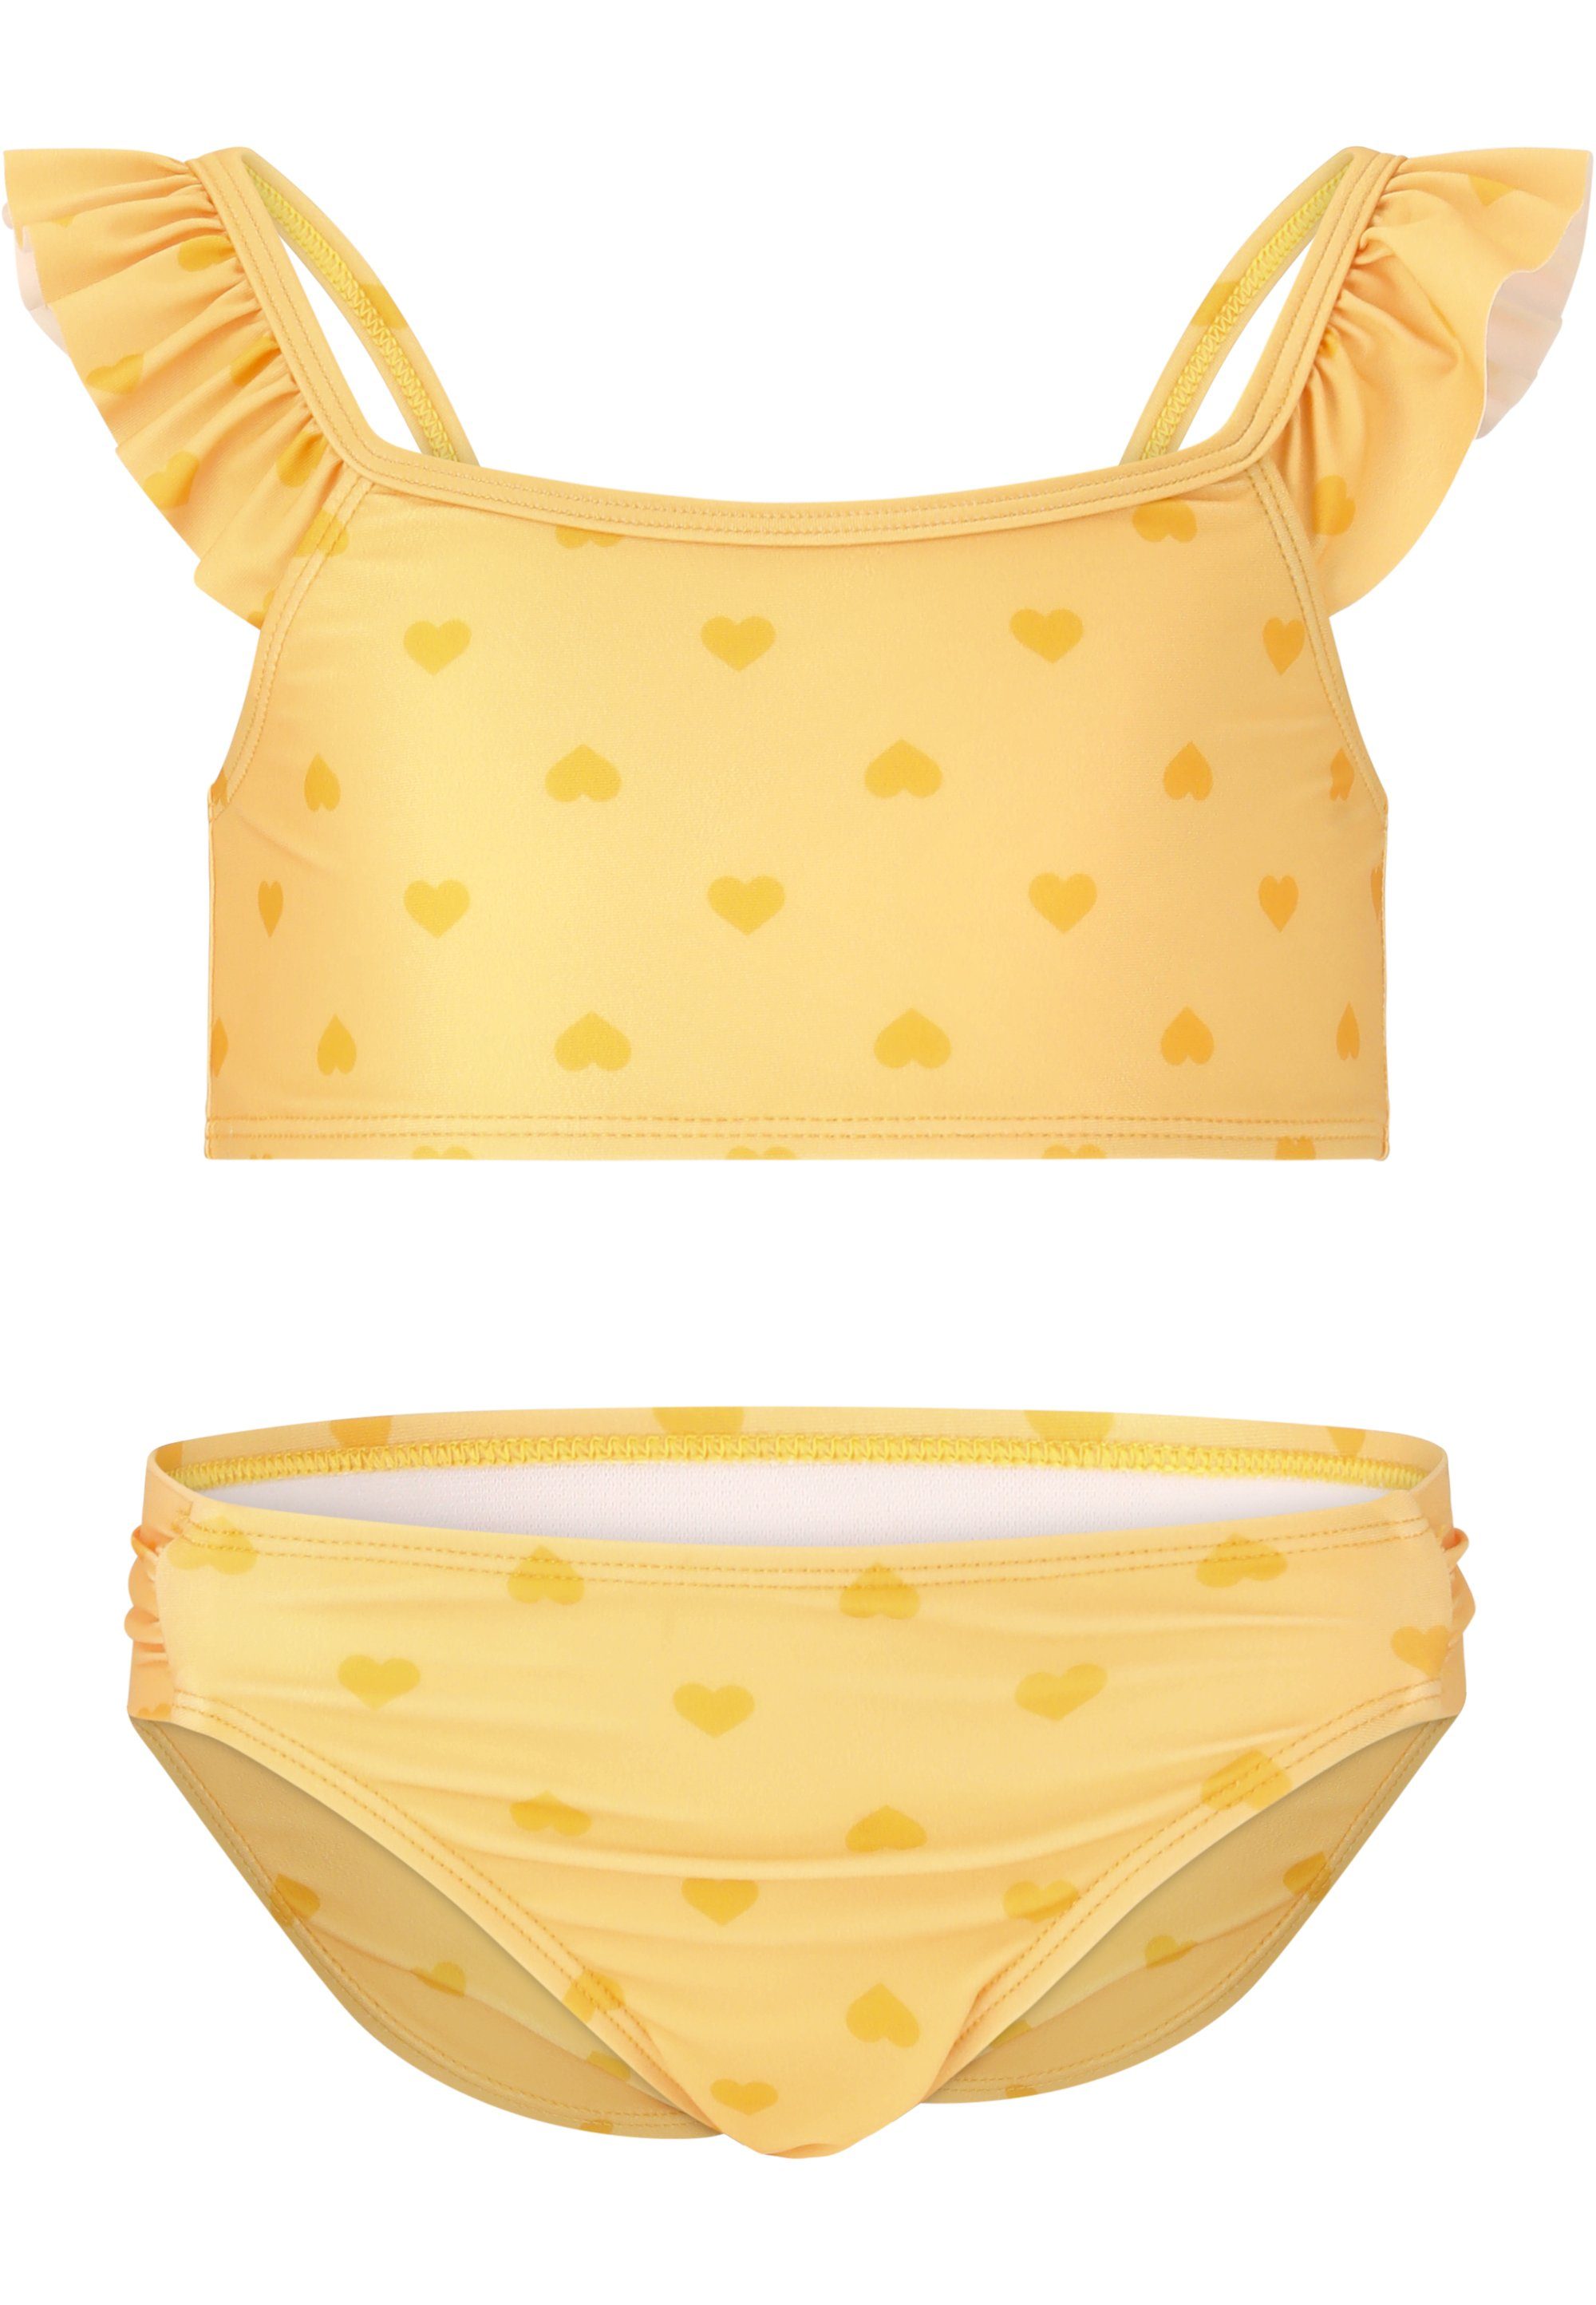 stylischem Balconette-Bikini mit gelb-gelb Rüschendetail ZIGZAG Carly